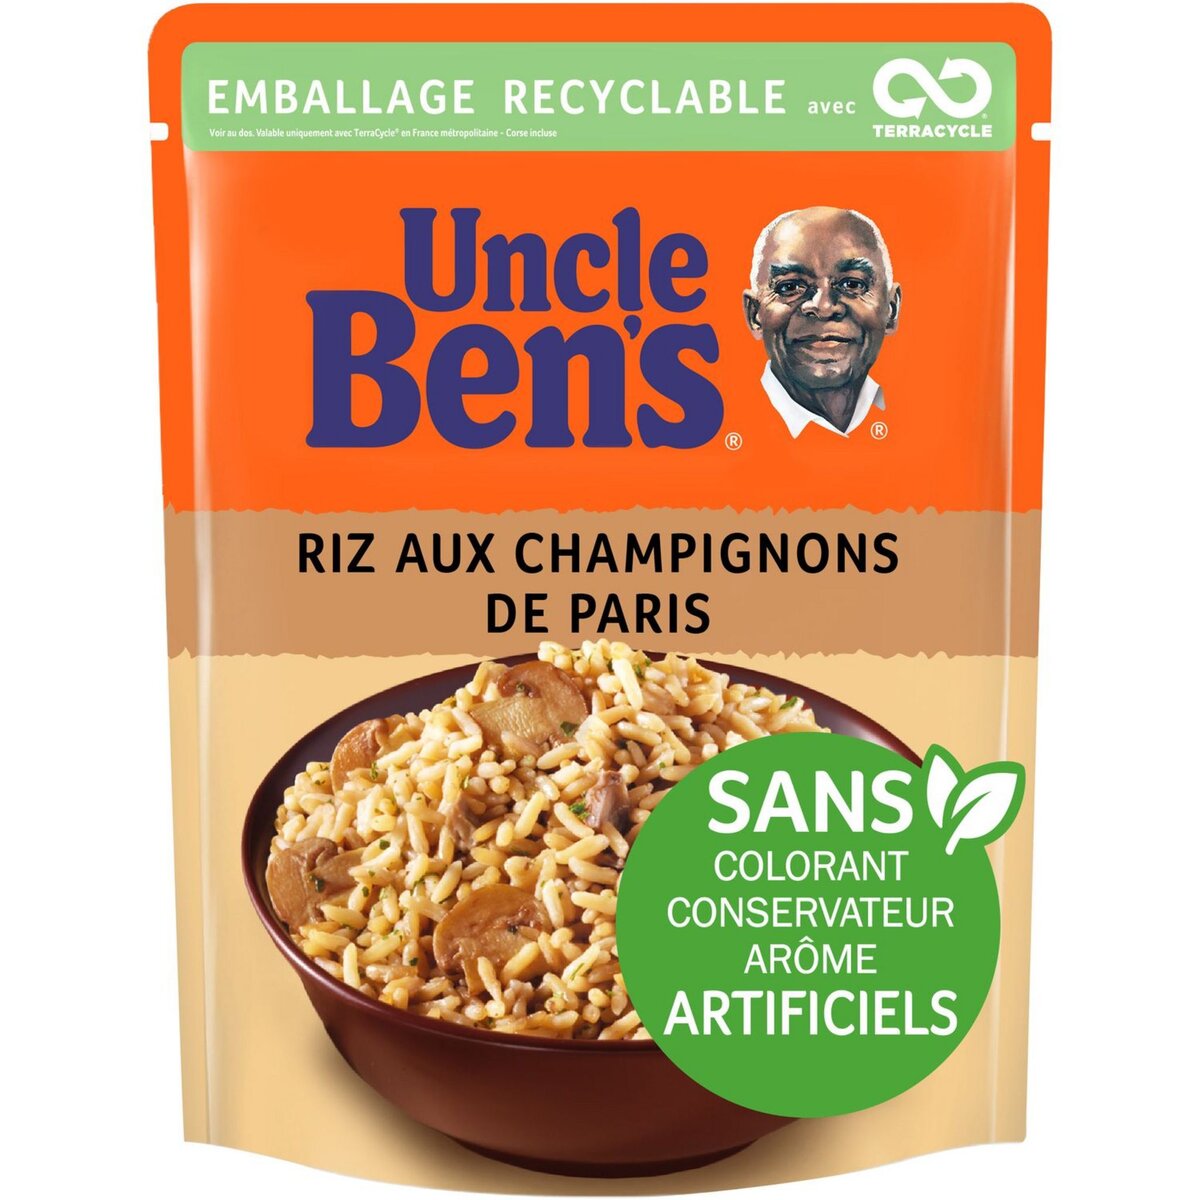 UNCLE BEN'S Uncle Ben's riz express champignons de Paris 2 minutes 250g